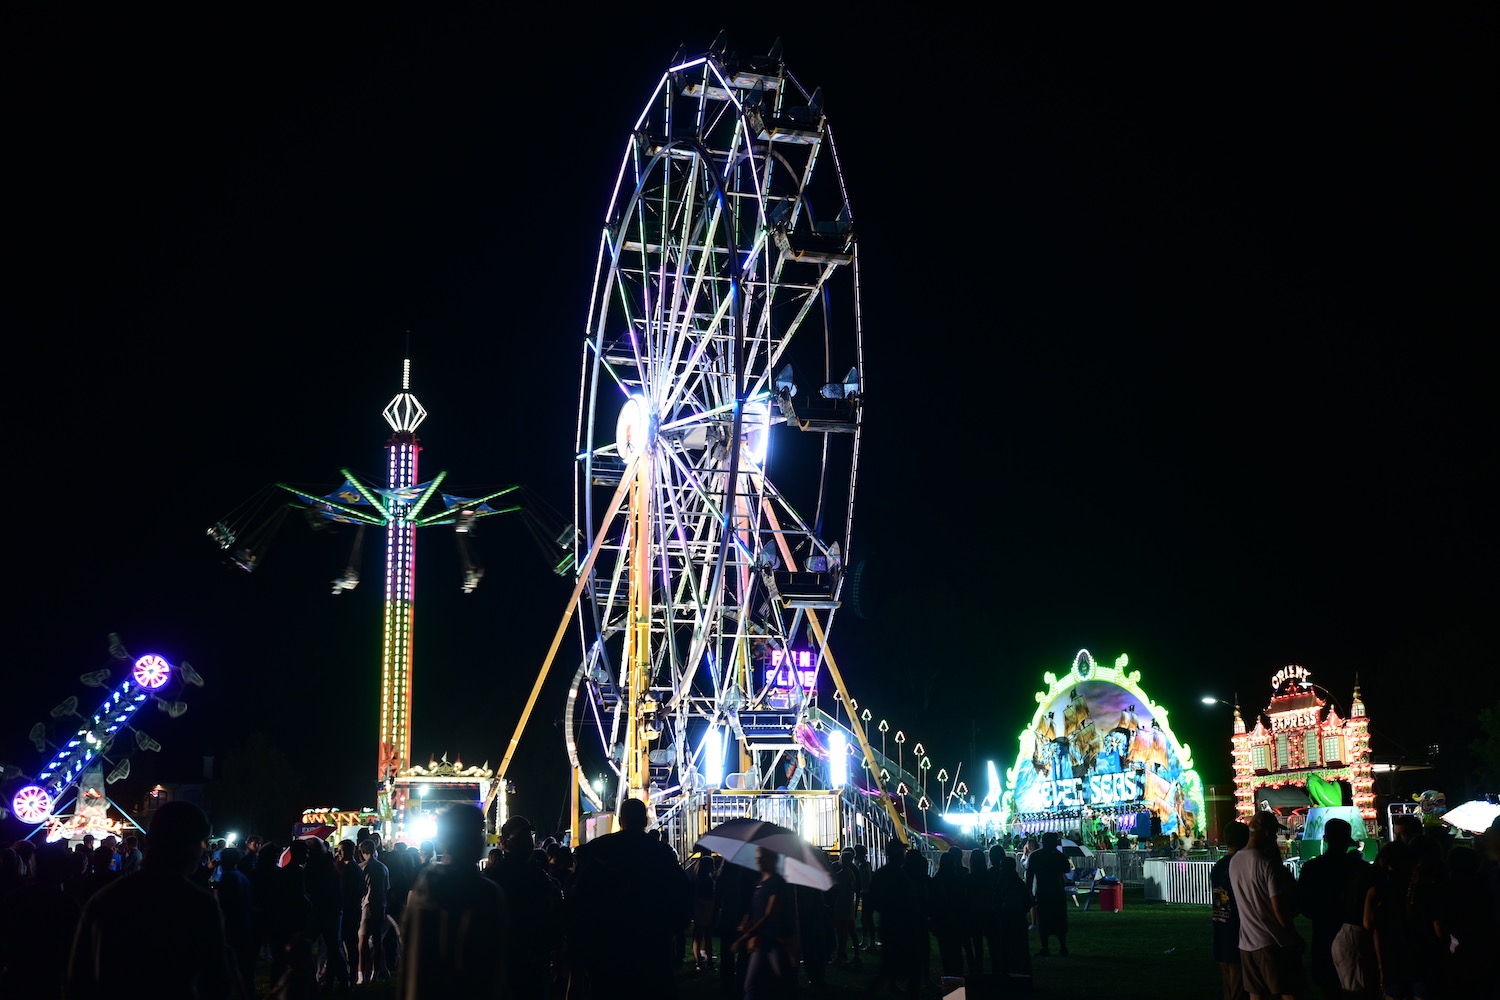 carnival at night